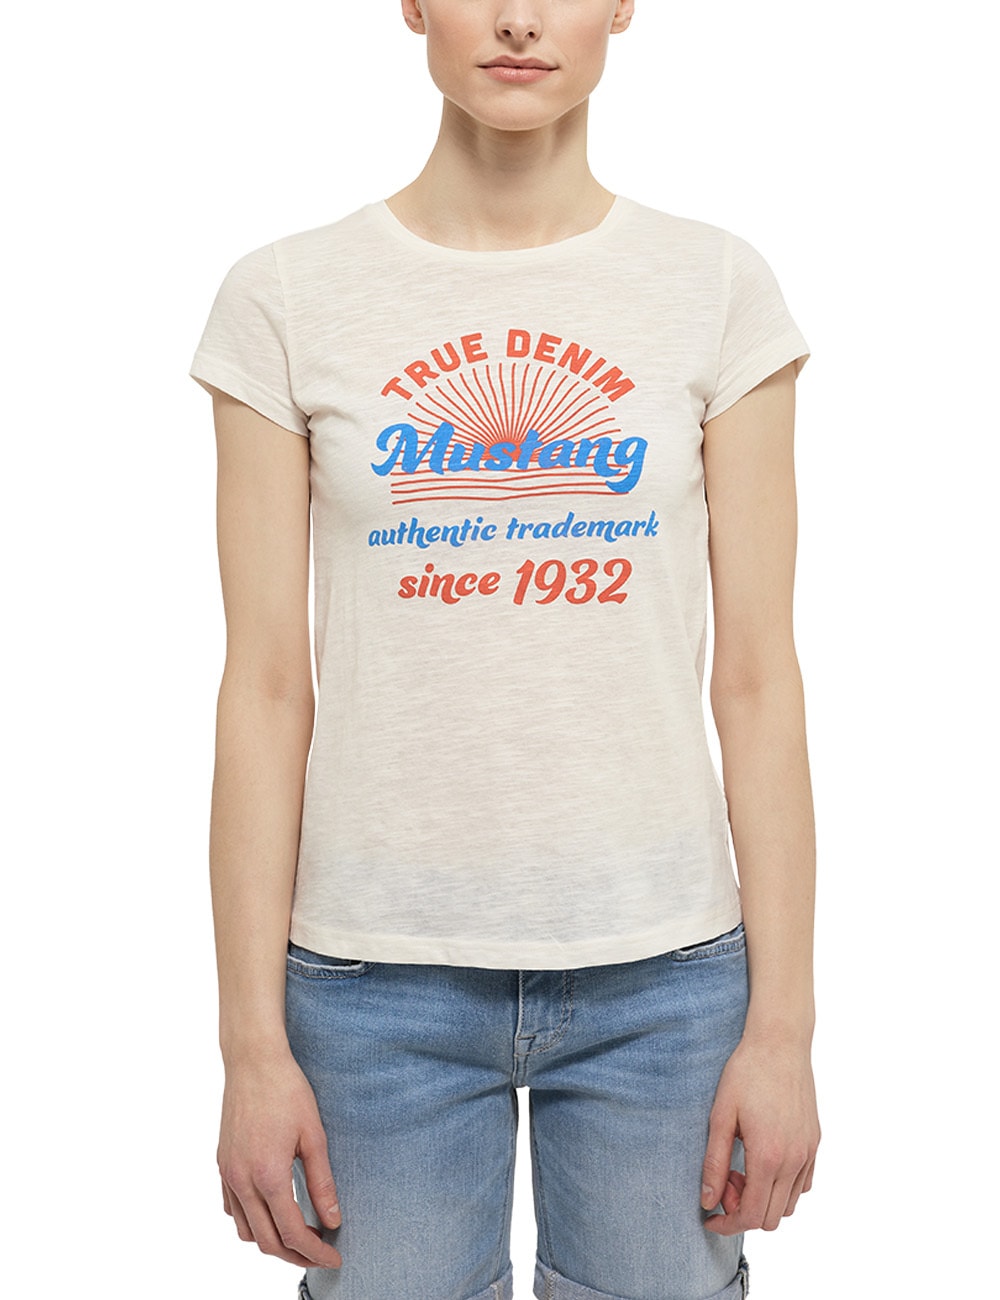 Seidel Moden T-Shirt, tragbar mit V- oder rundem Ausschnitt vorne, 2-in-1- Shirt, Made in Germany